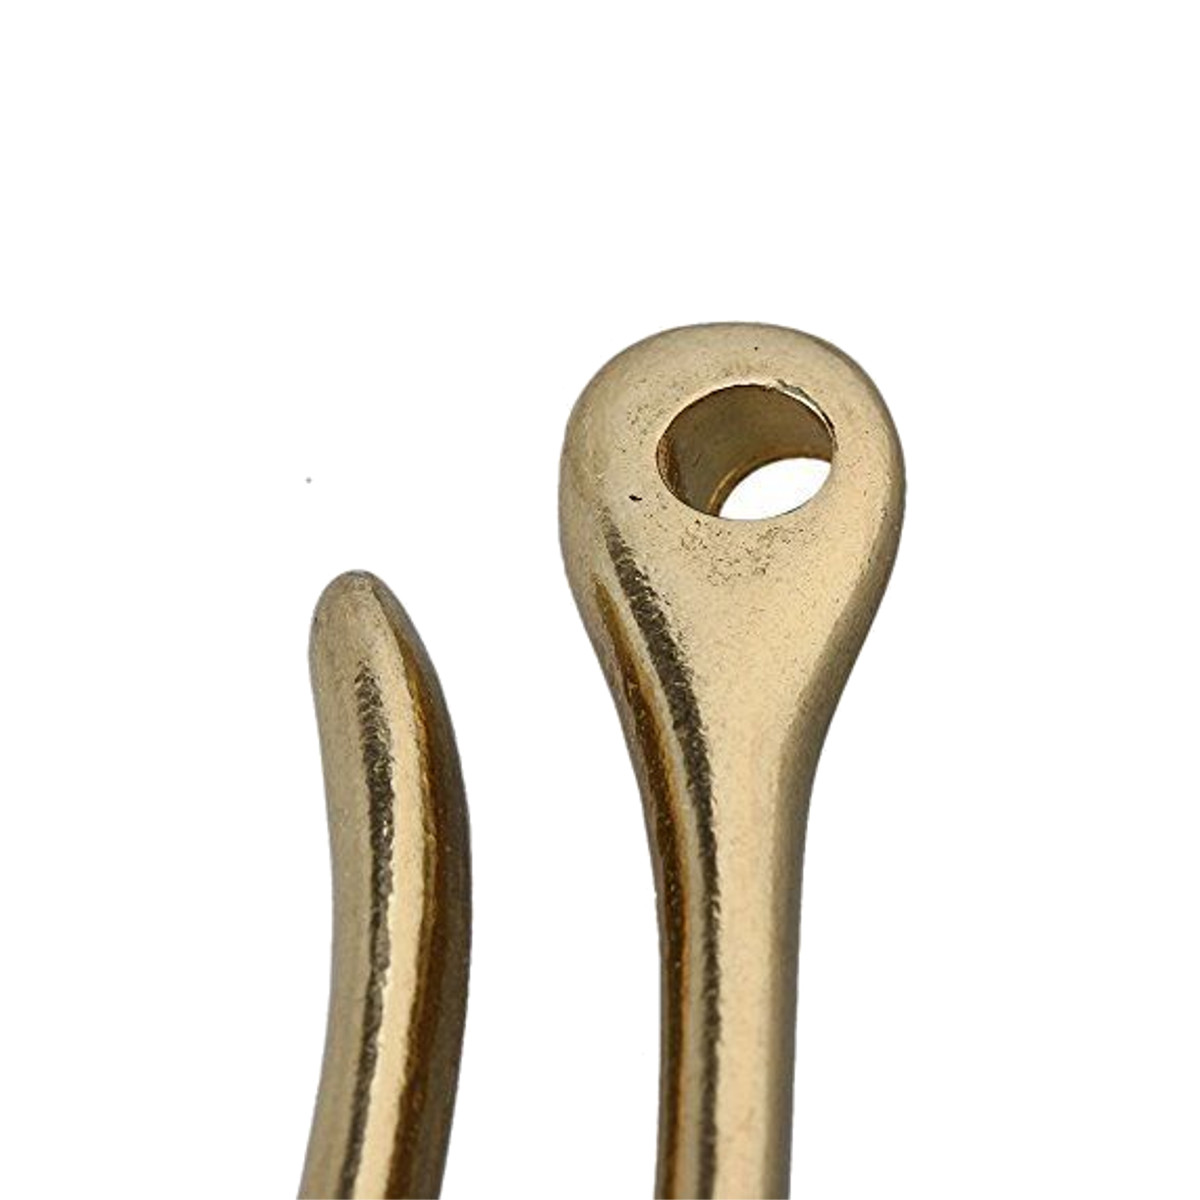 3-Sizes-Solid-Brass-KeyChain-Key-Ring-Belt-U-Hook-Wallet-Chain-Key-Clip-Hook-1188529